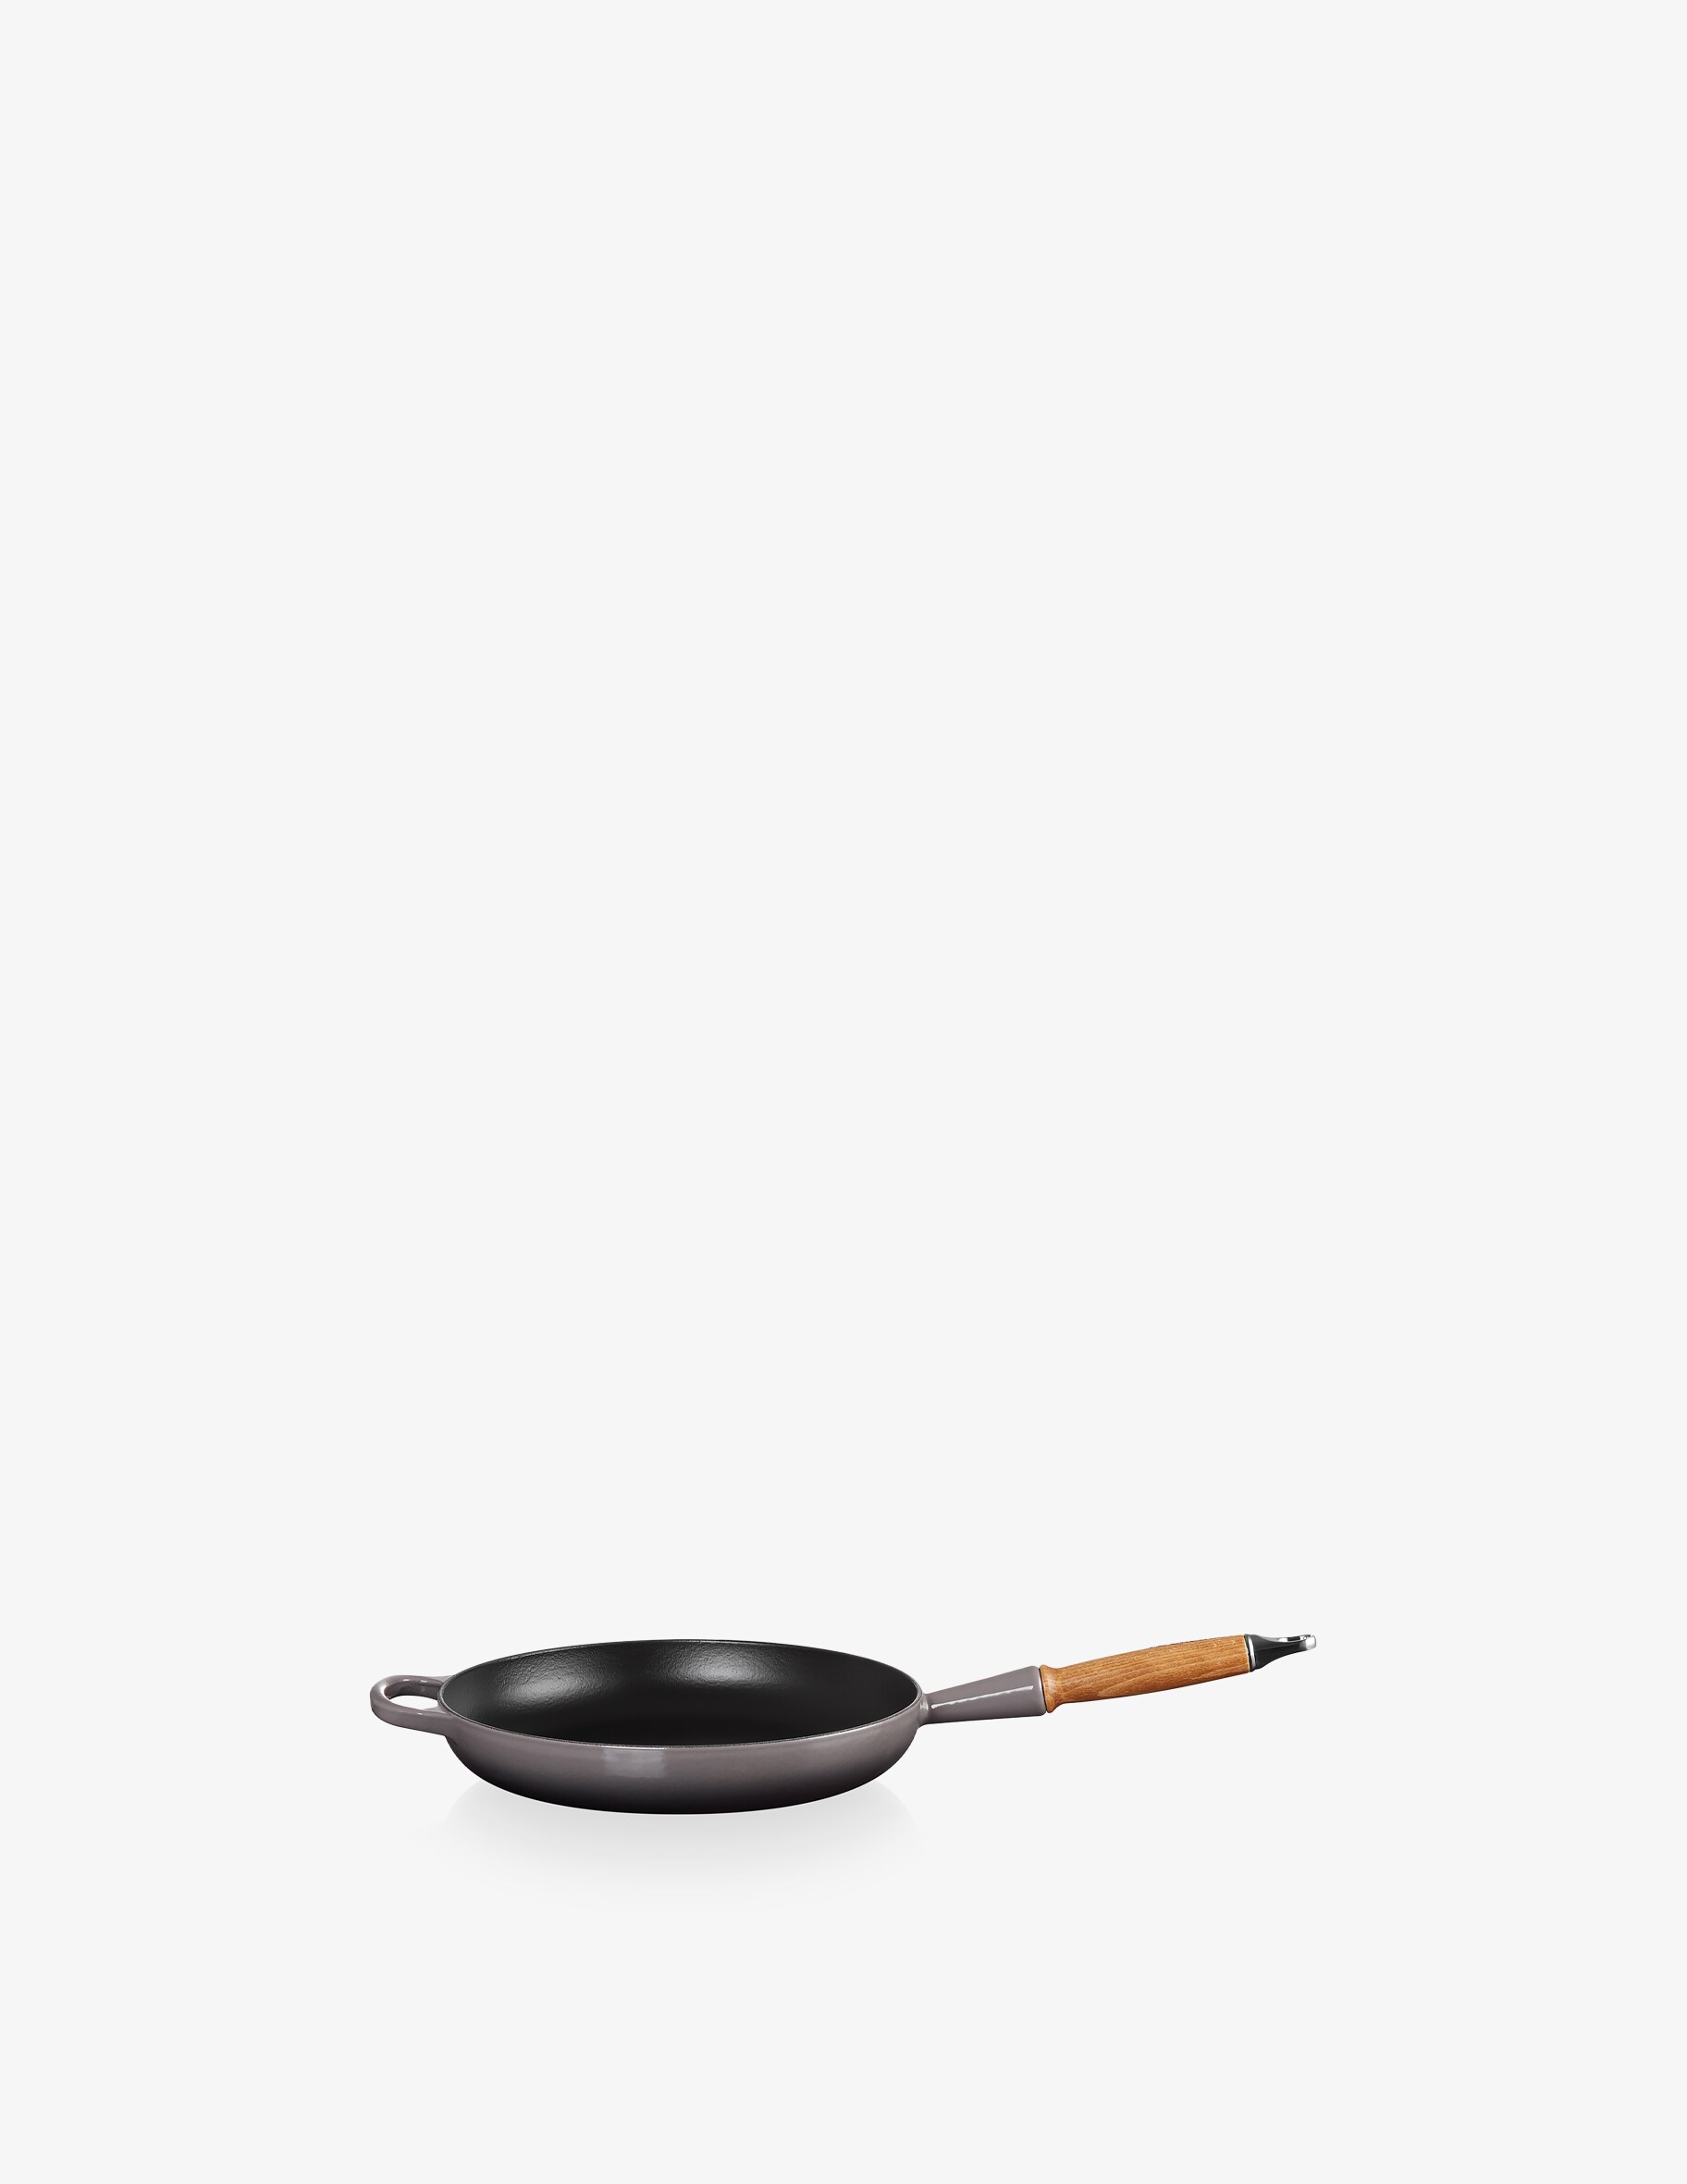 Фирменная сковорода с деревянной ручкой Le Creuset, цвет Flint щипцы le creuset силикон черные